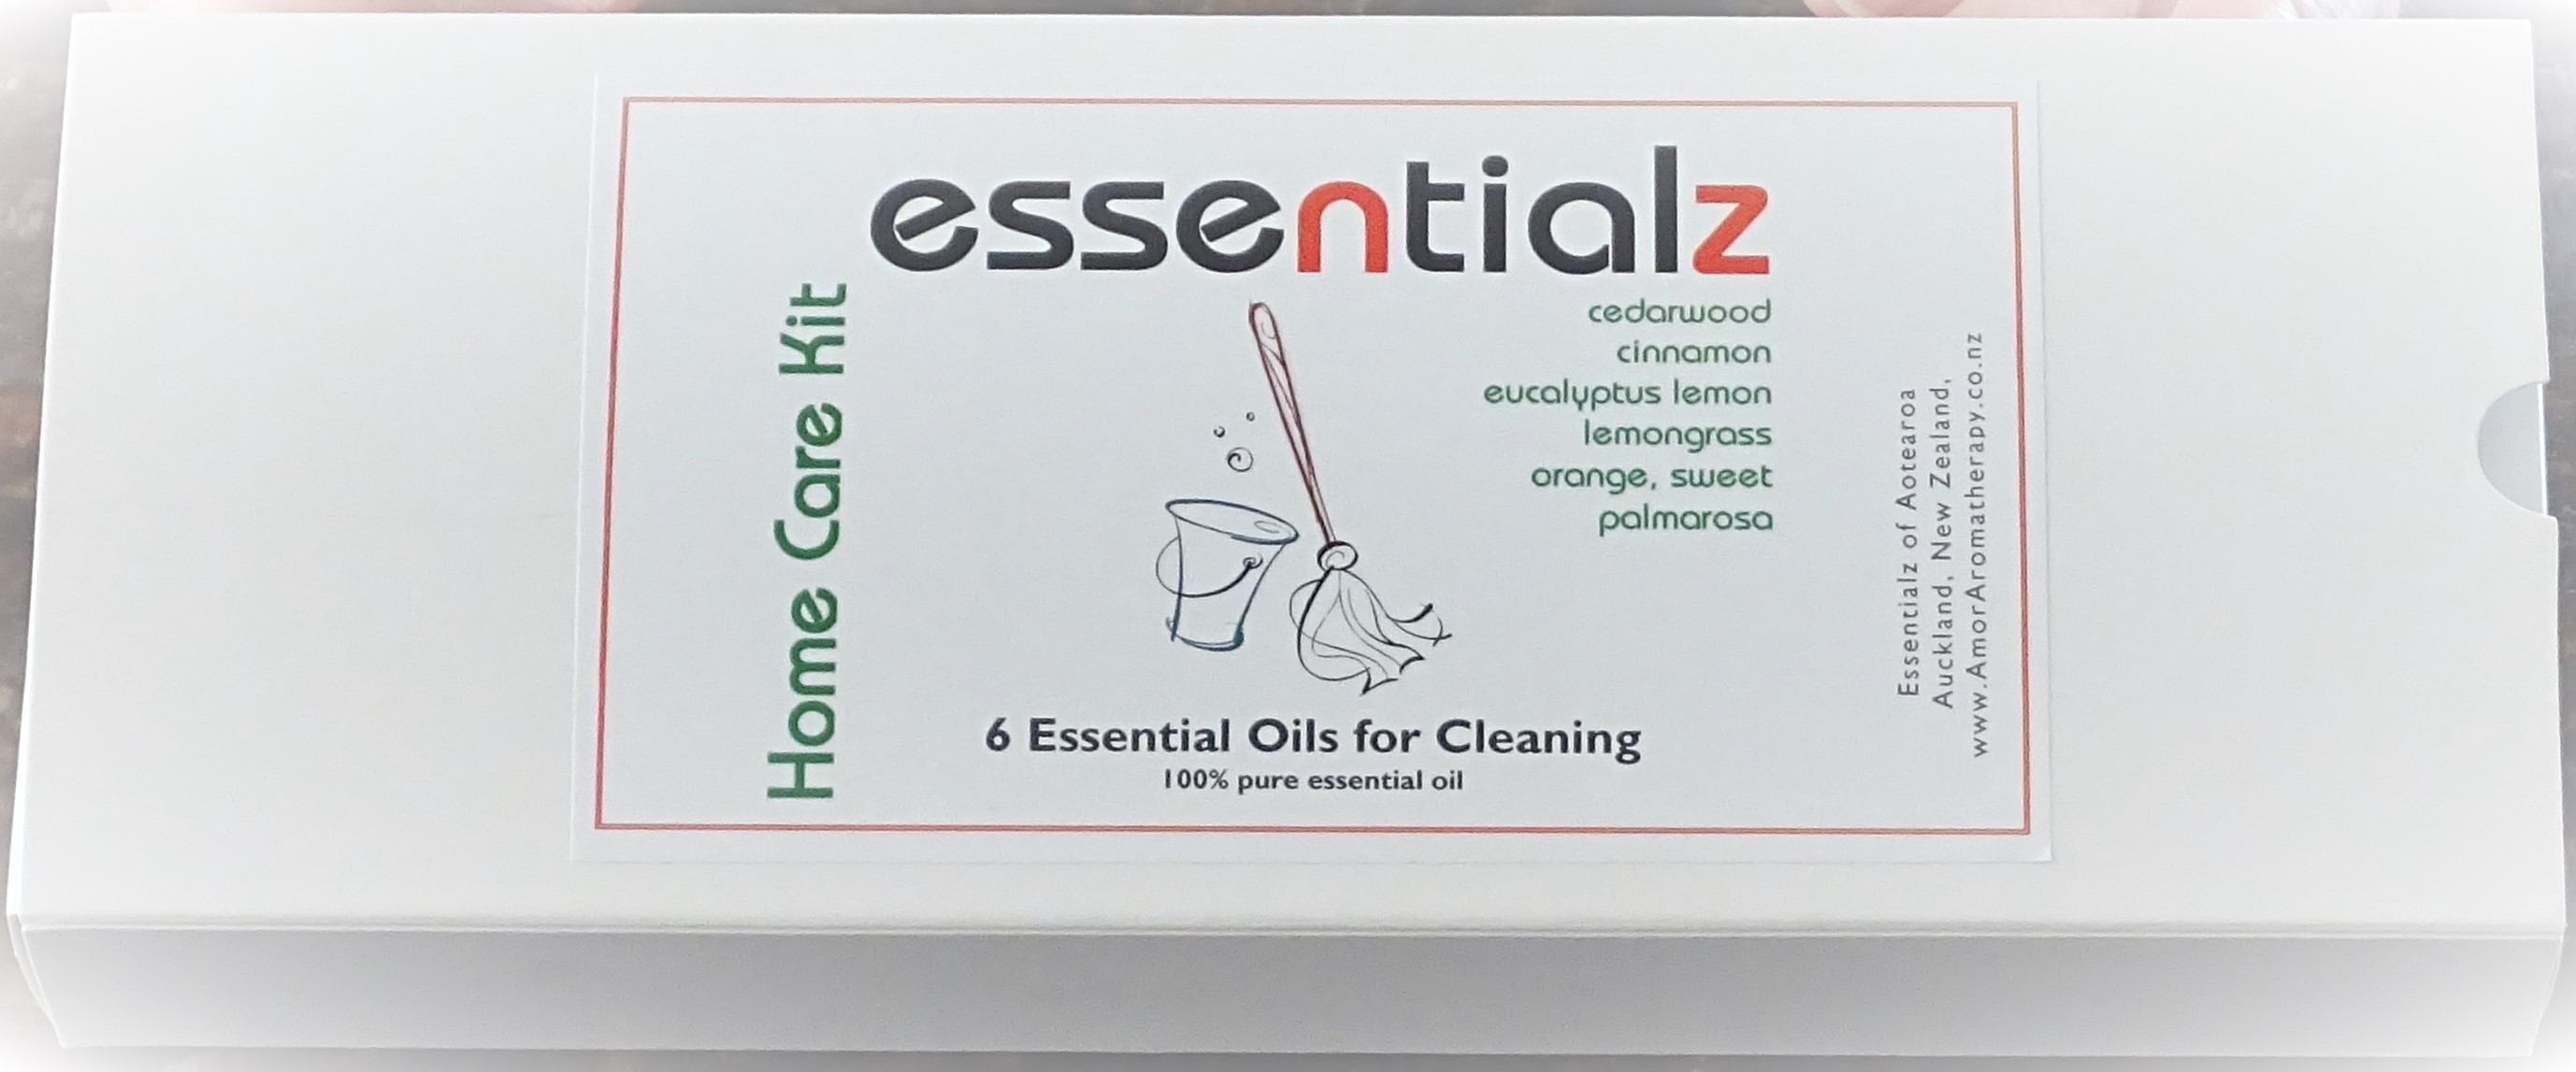 Essentialz Essential Oil Kits